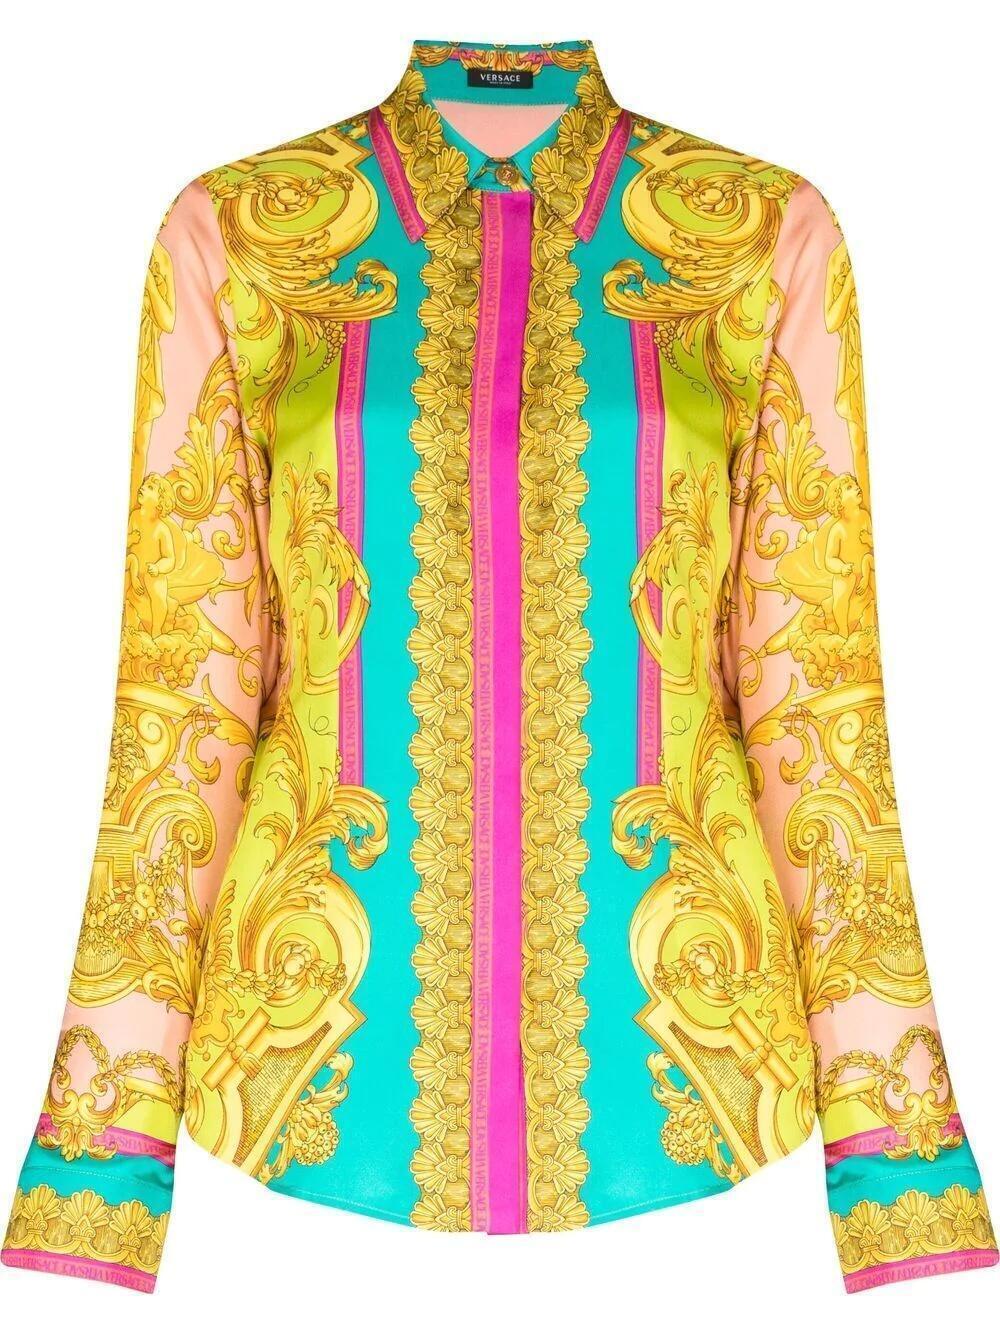 Overshirt (Barocco Goddess) | style